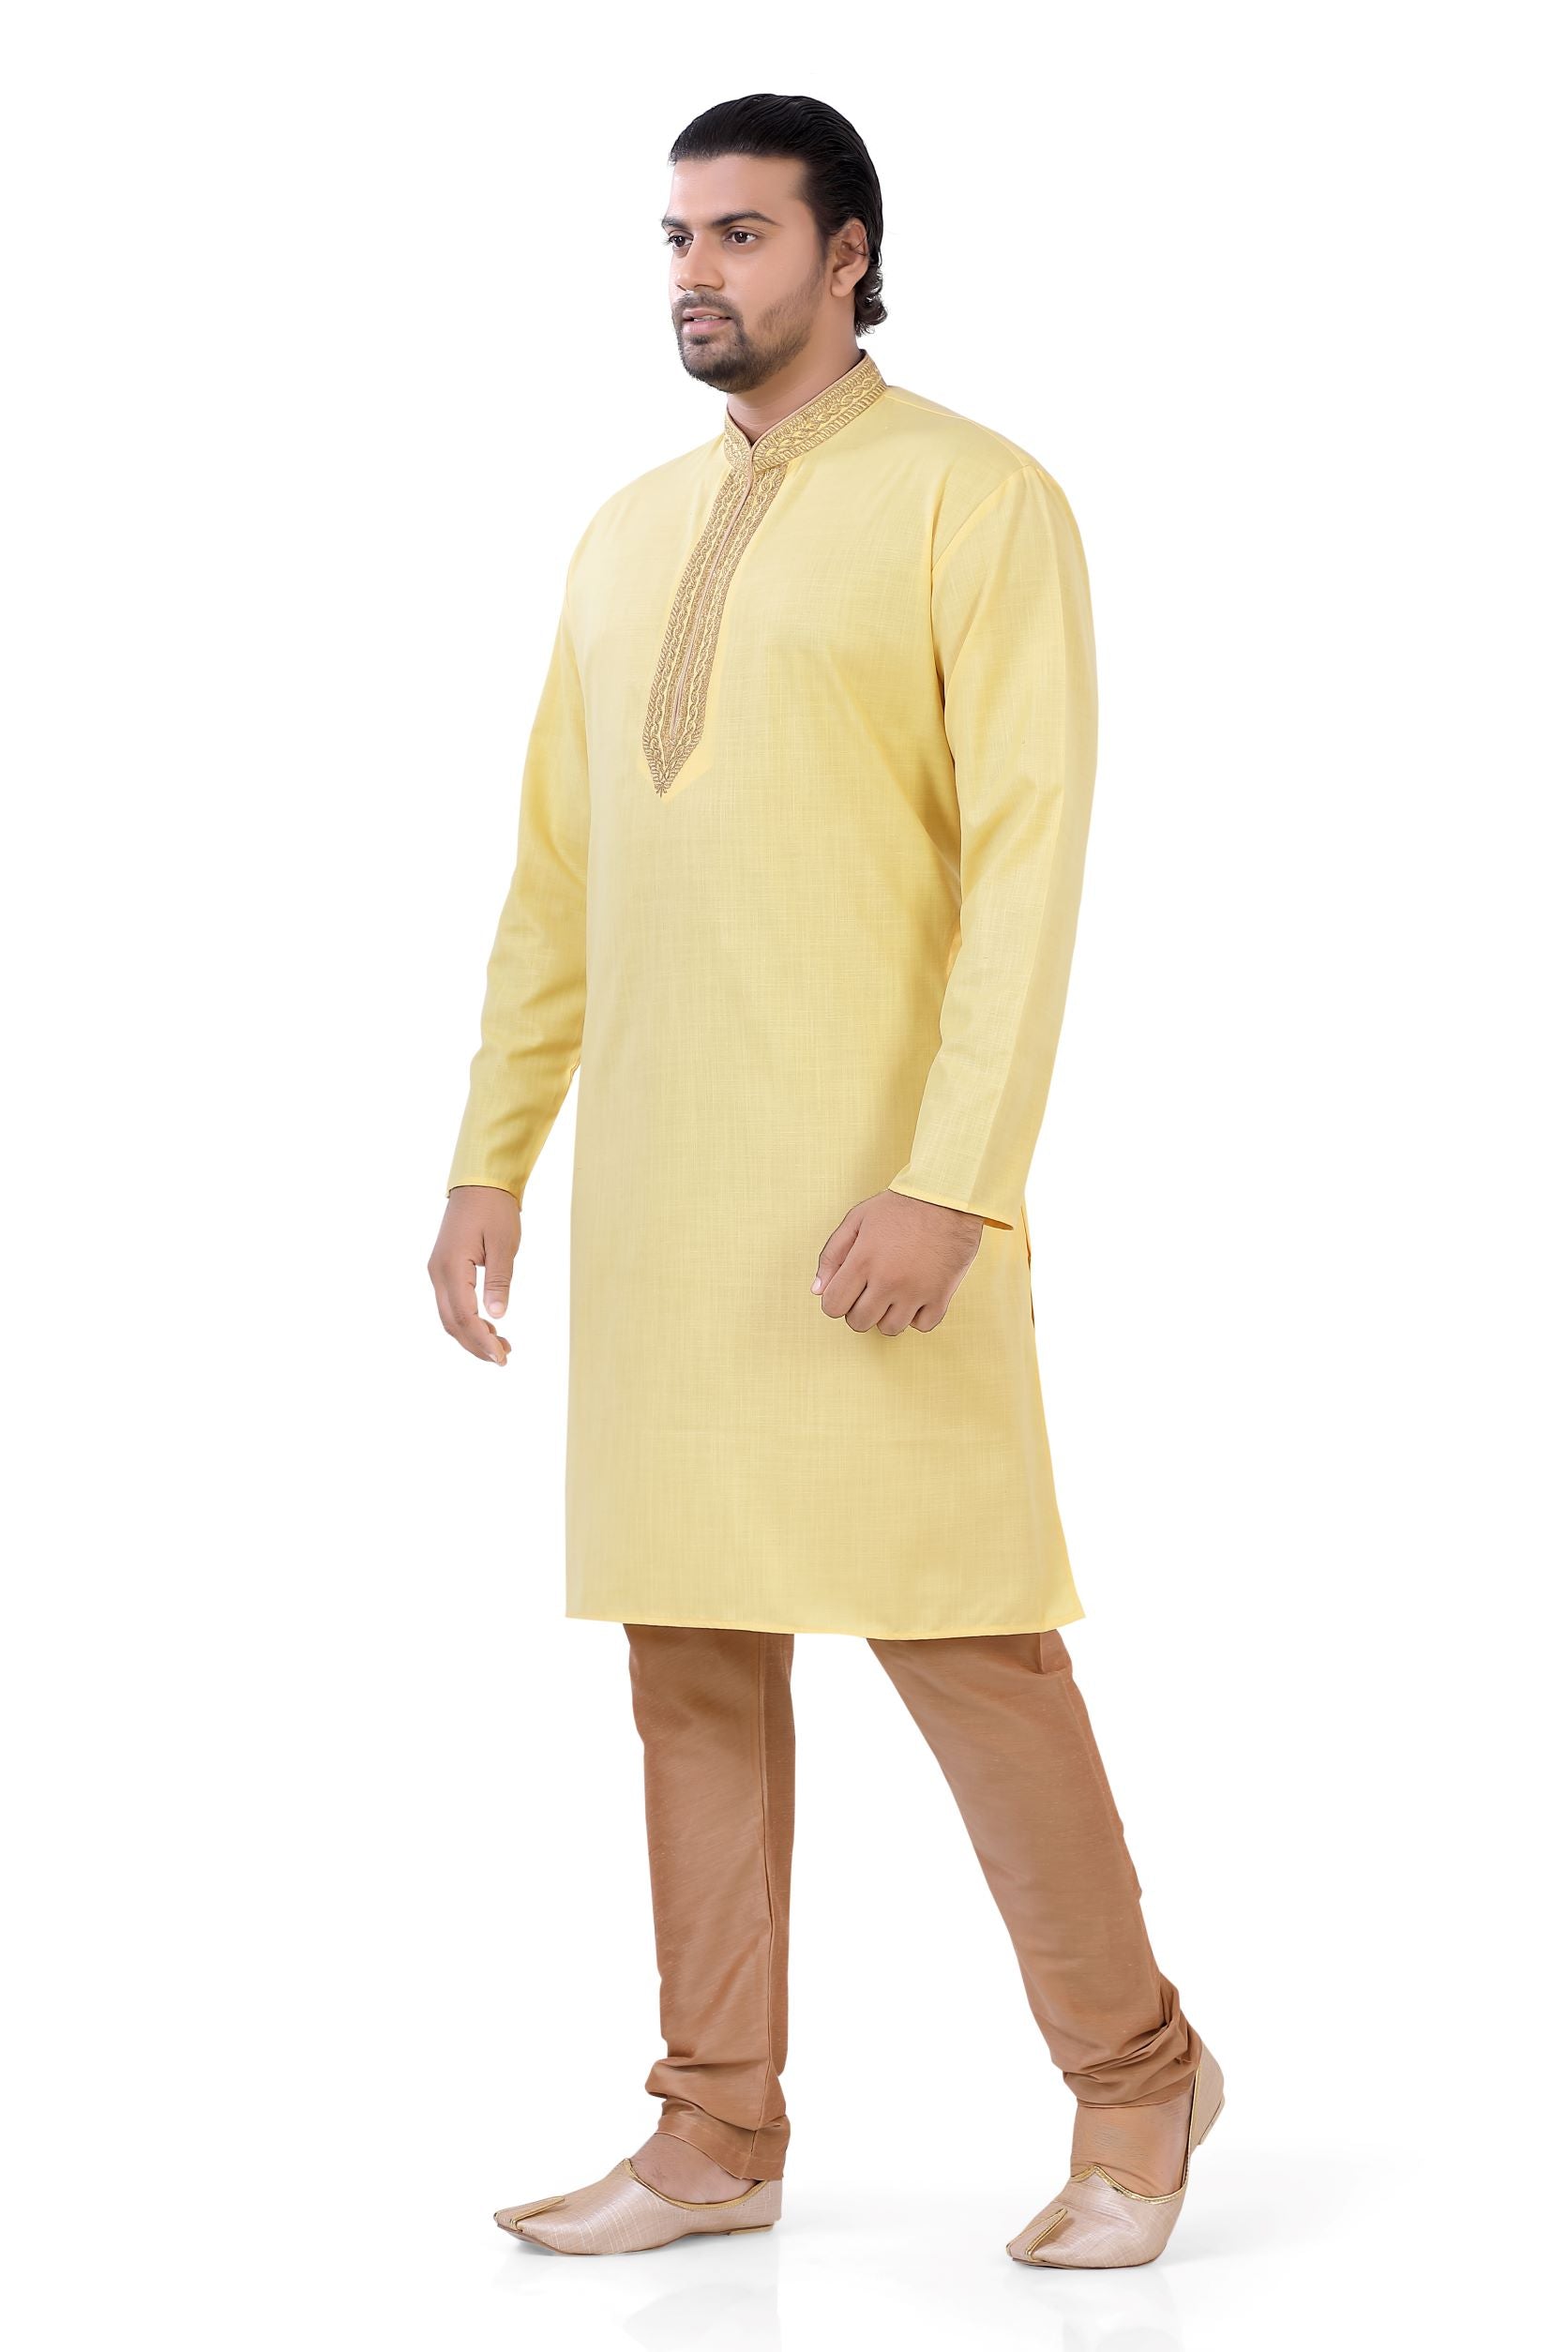 Plus size Cotton Embroidered Kurta Pajama set in Yellow